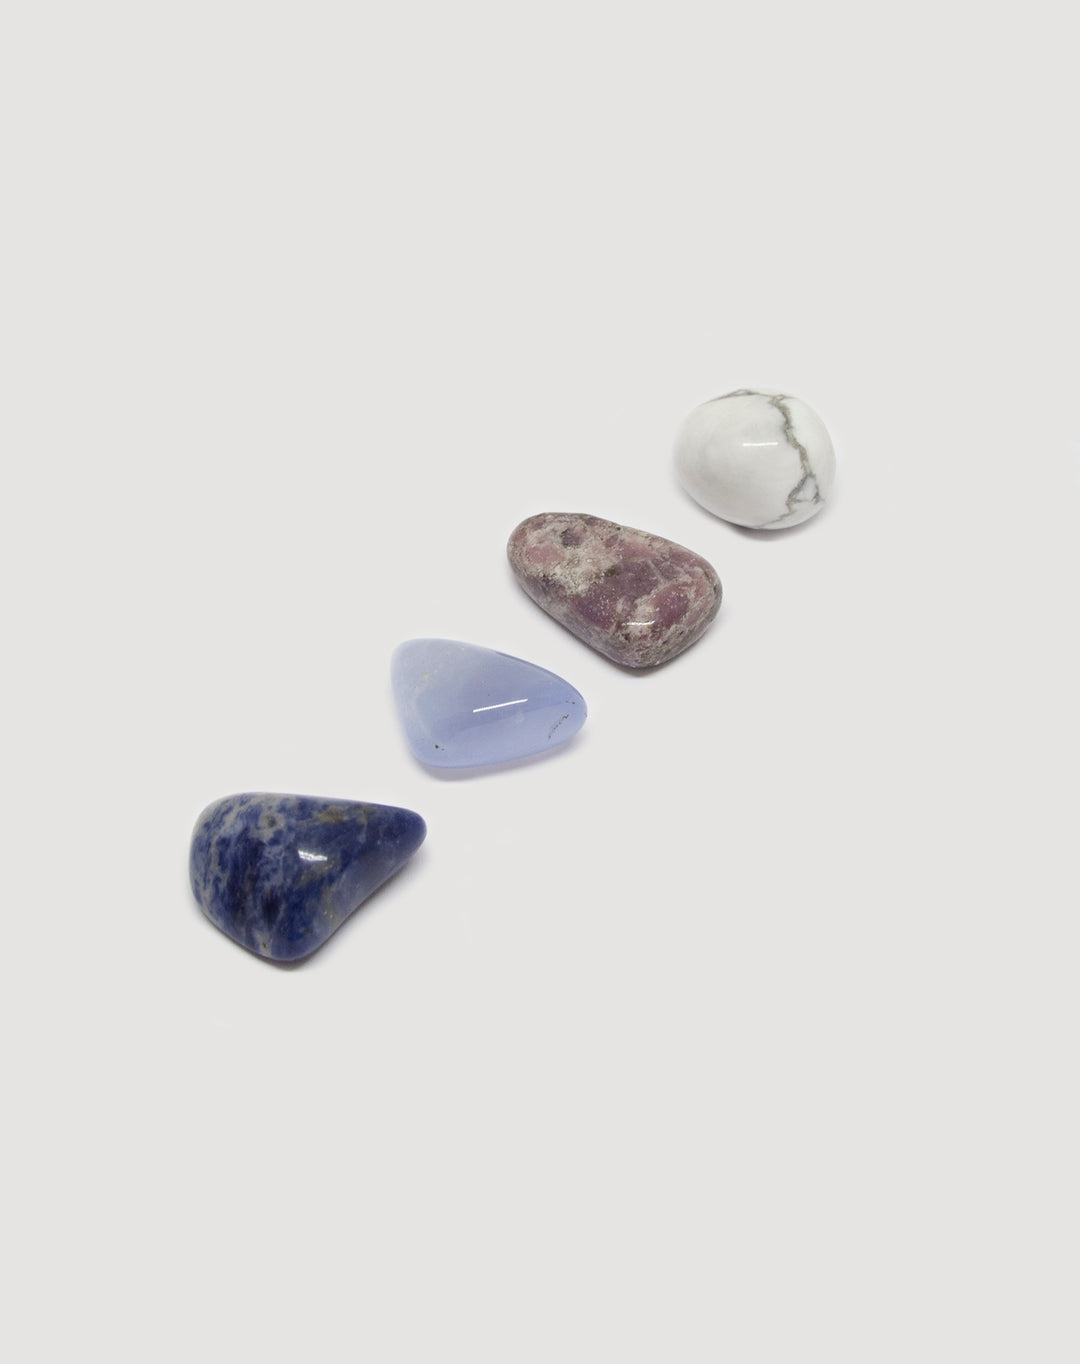 llayers  kit pierres cristaux lithothérapie anti stress healing crystals lithothérapy  howlite sodalite calcédoine bleue lépidolite